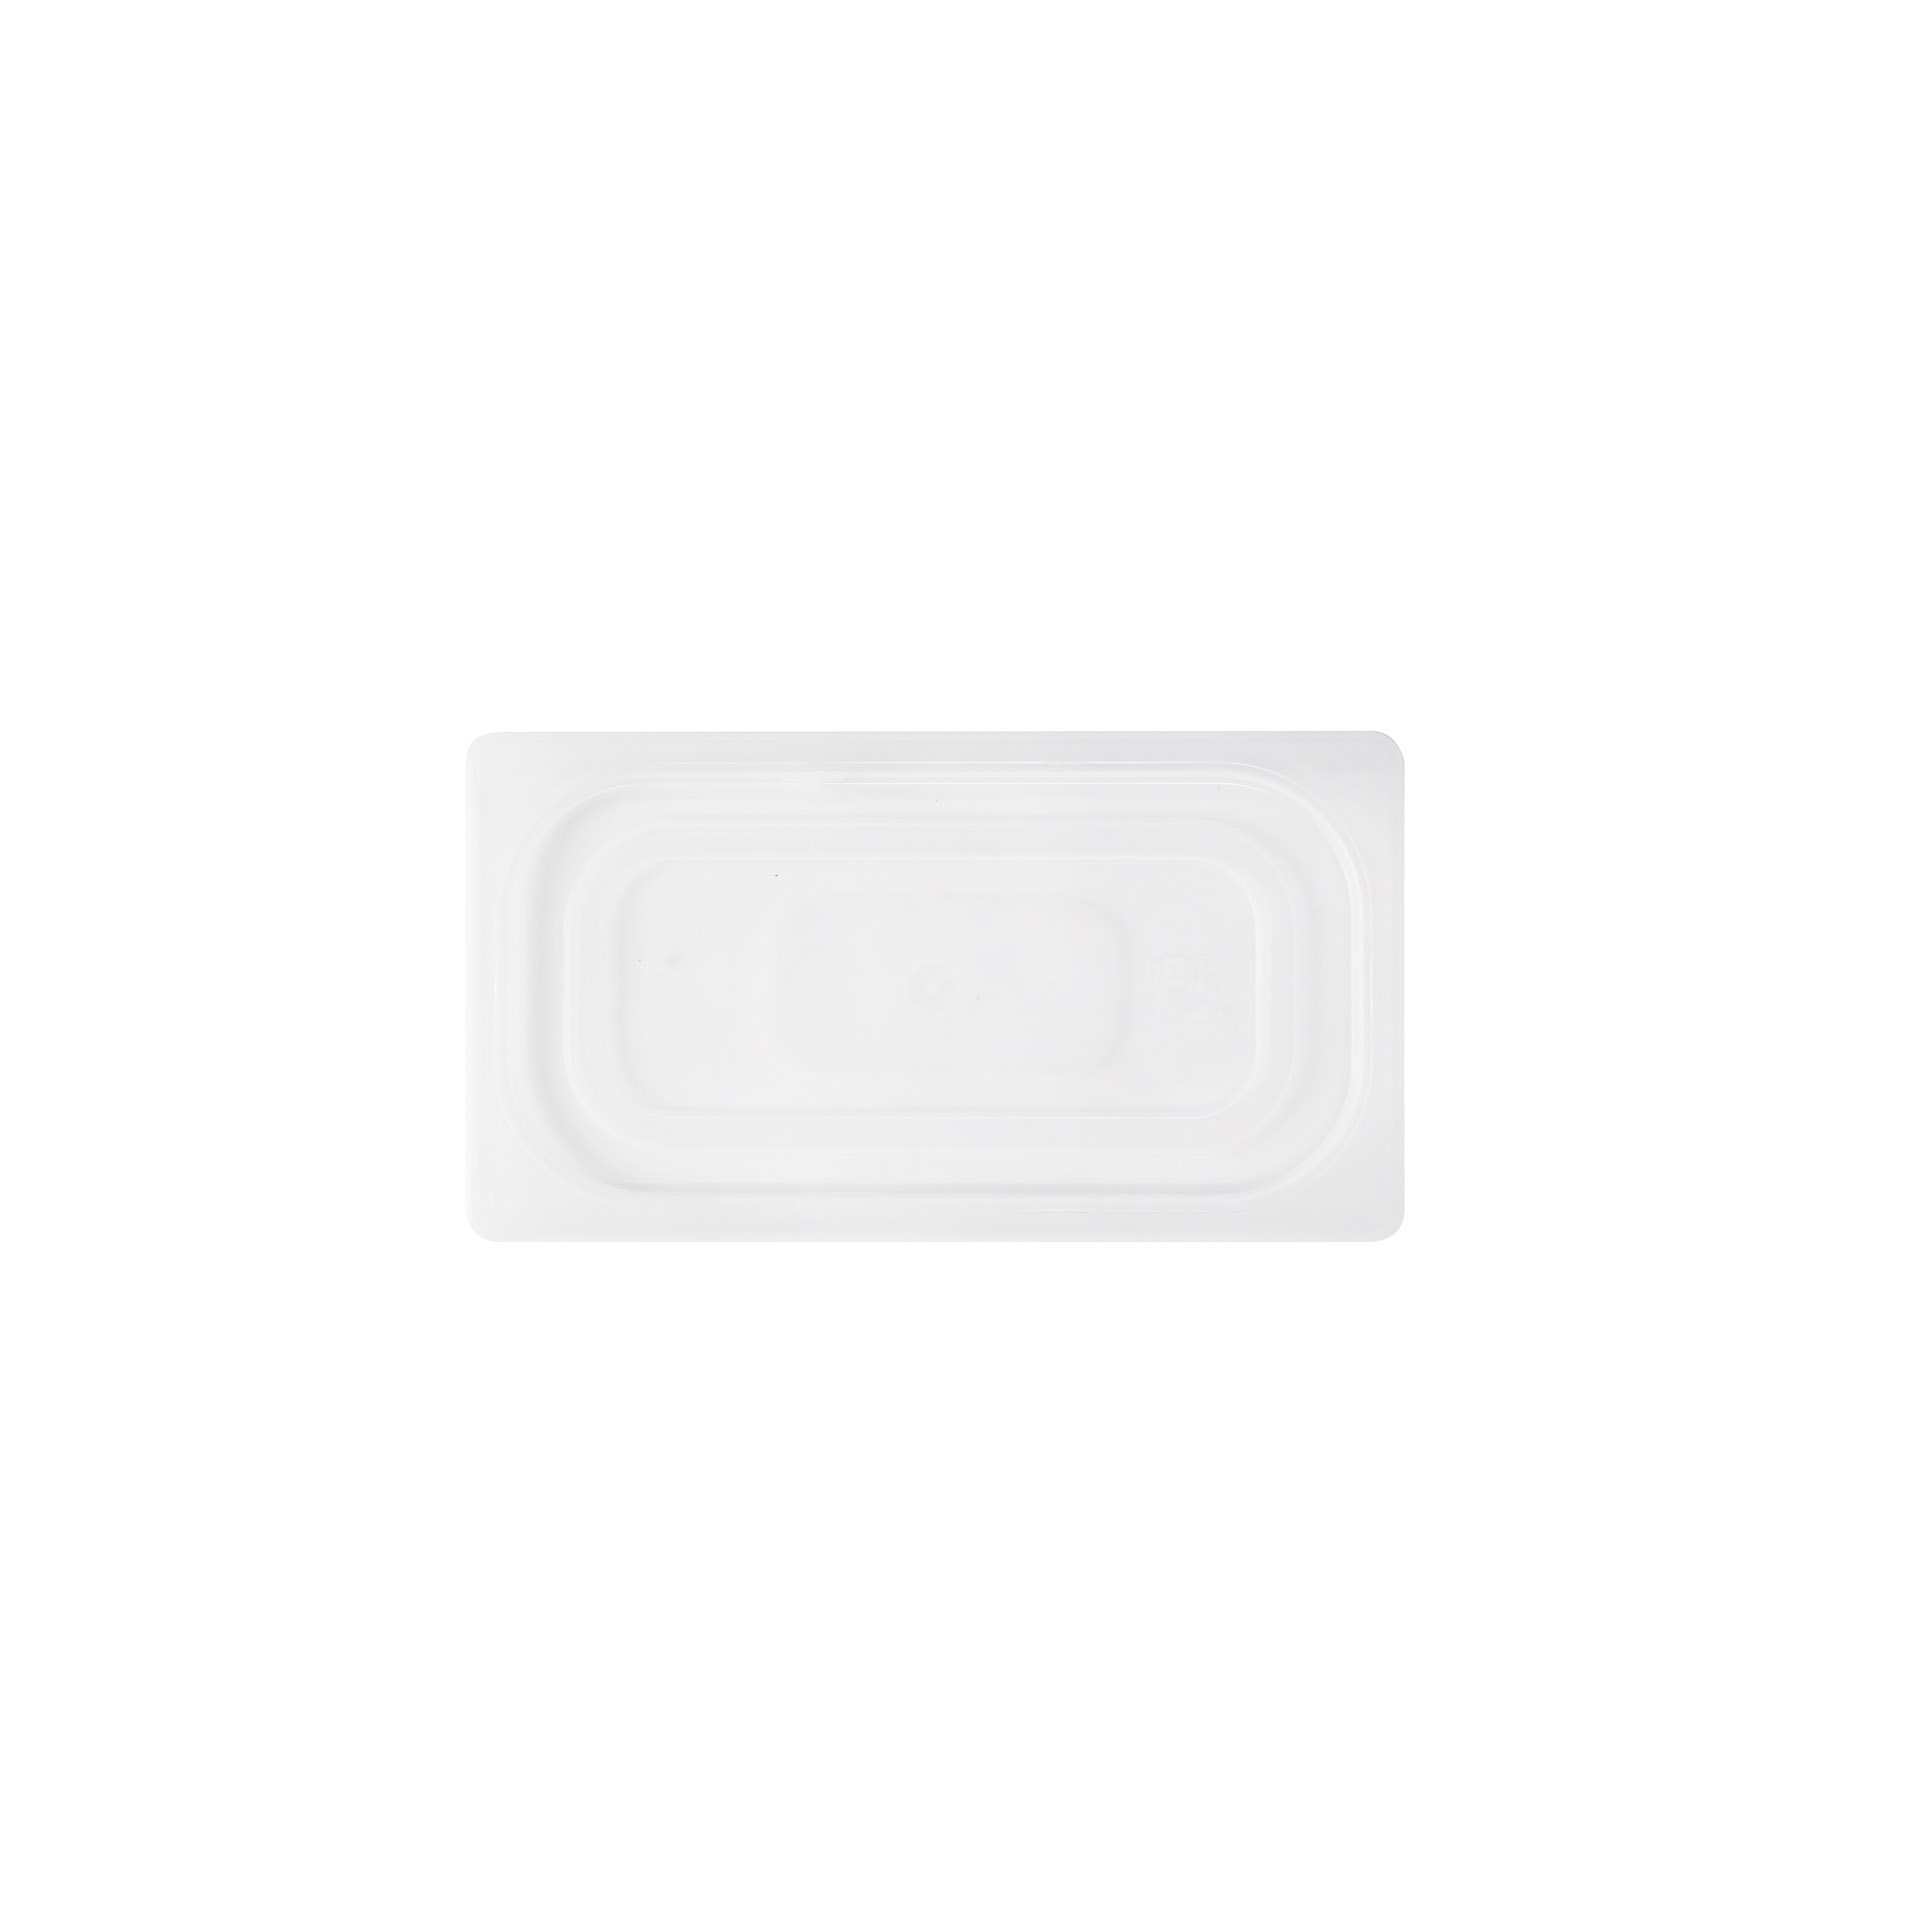 GN-Deckel - einrastend - Abm. 32,5 x 17,6 x 1,3 cm - GN 1/3 (325 x 176 mm) - Polypropylen - 530025-C